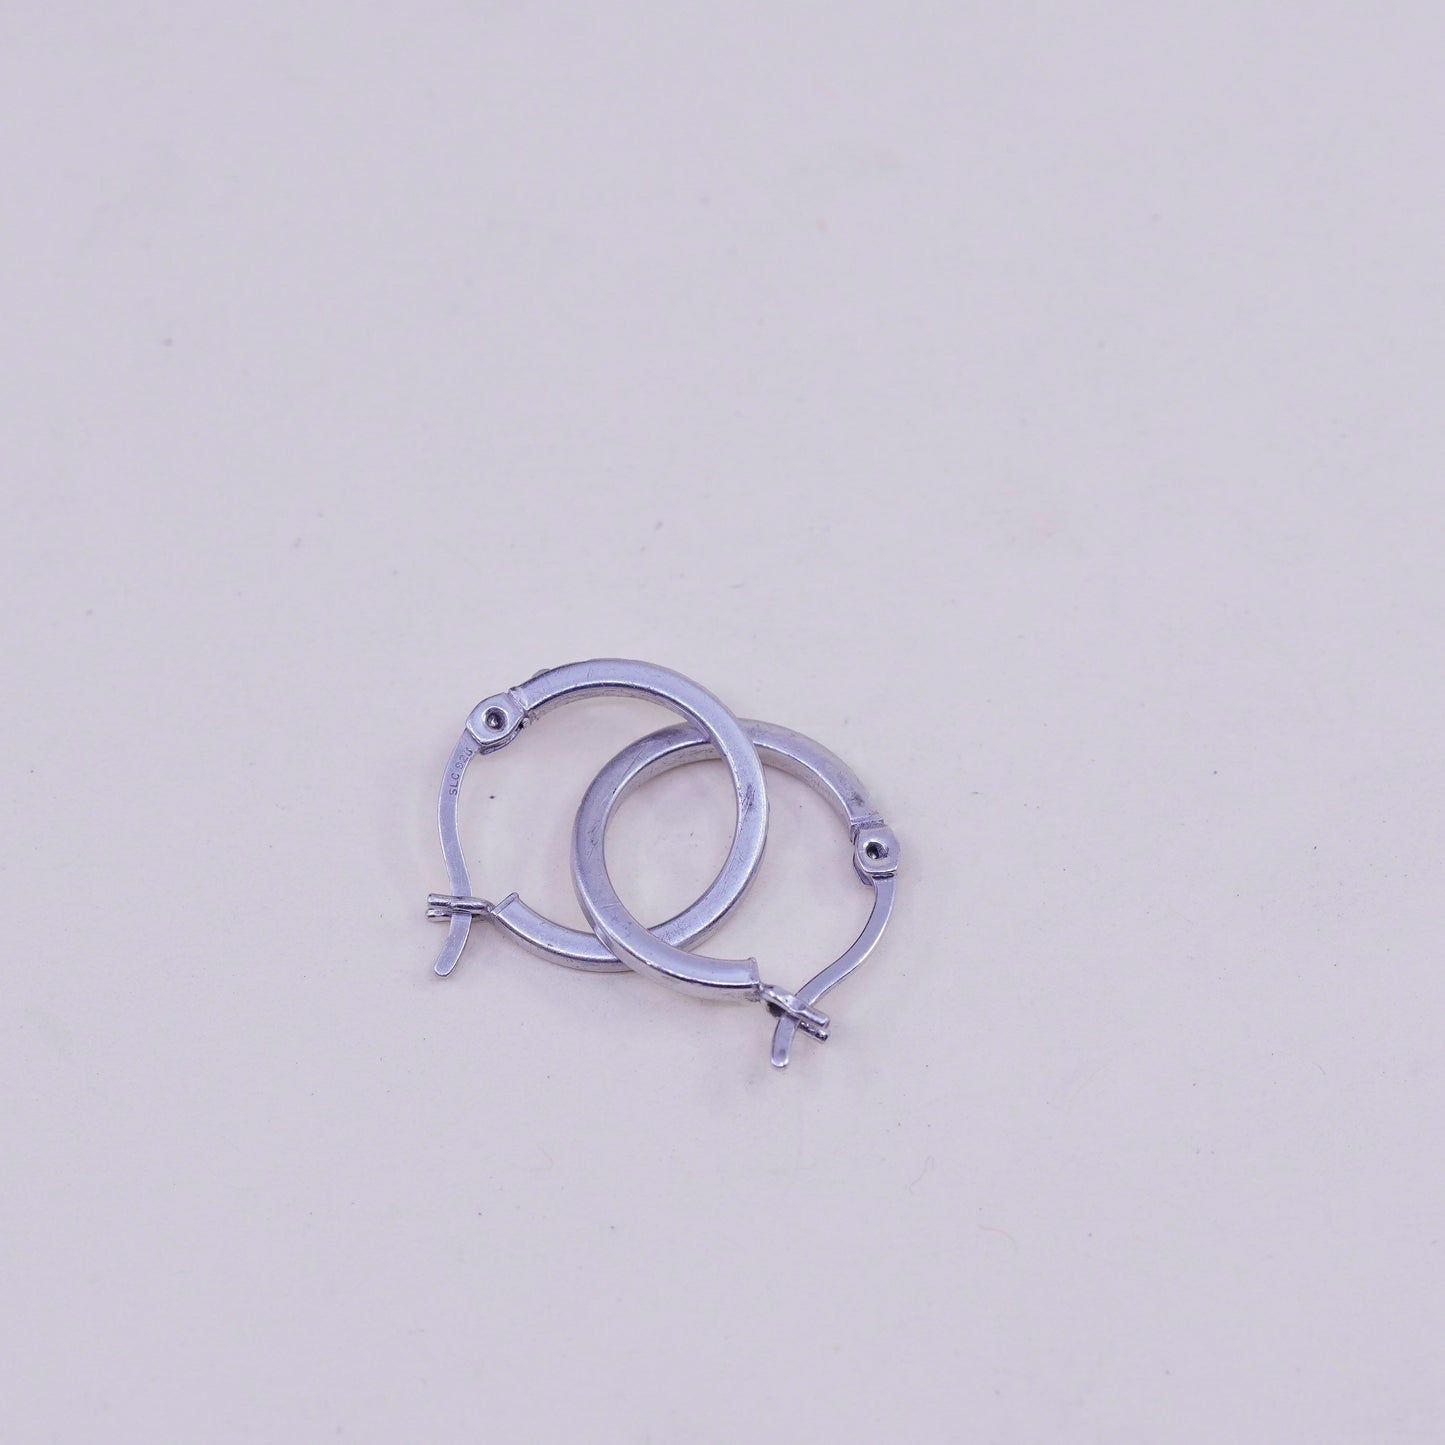 0.5”, Vintage sterling silver loop earrings, textured fine 925 silver hoops